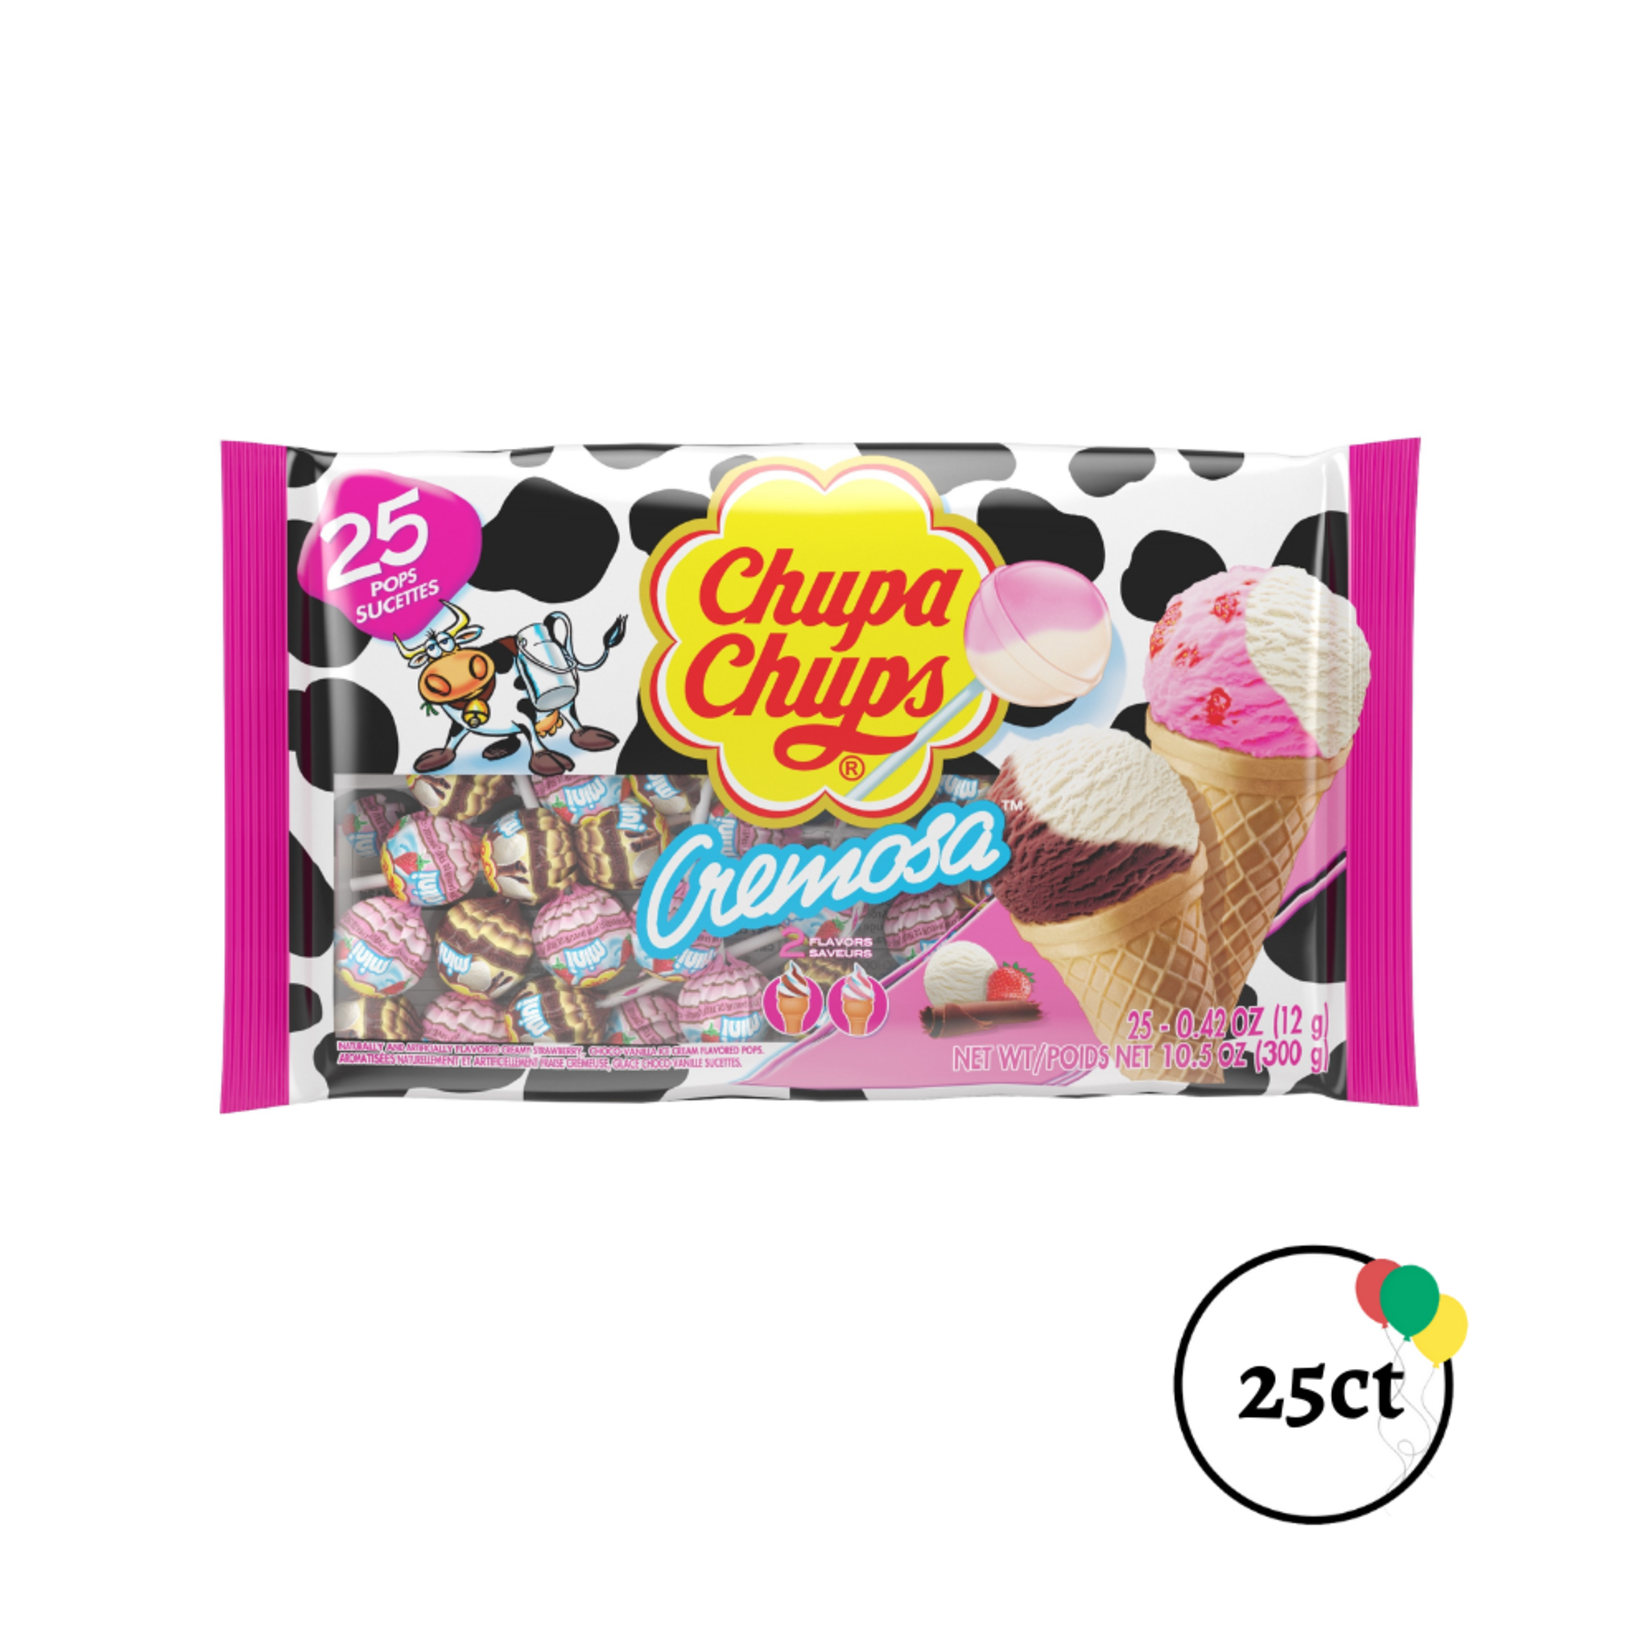 Chupa Chups Cremosa 25ct